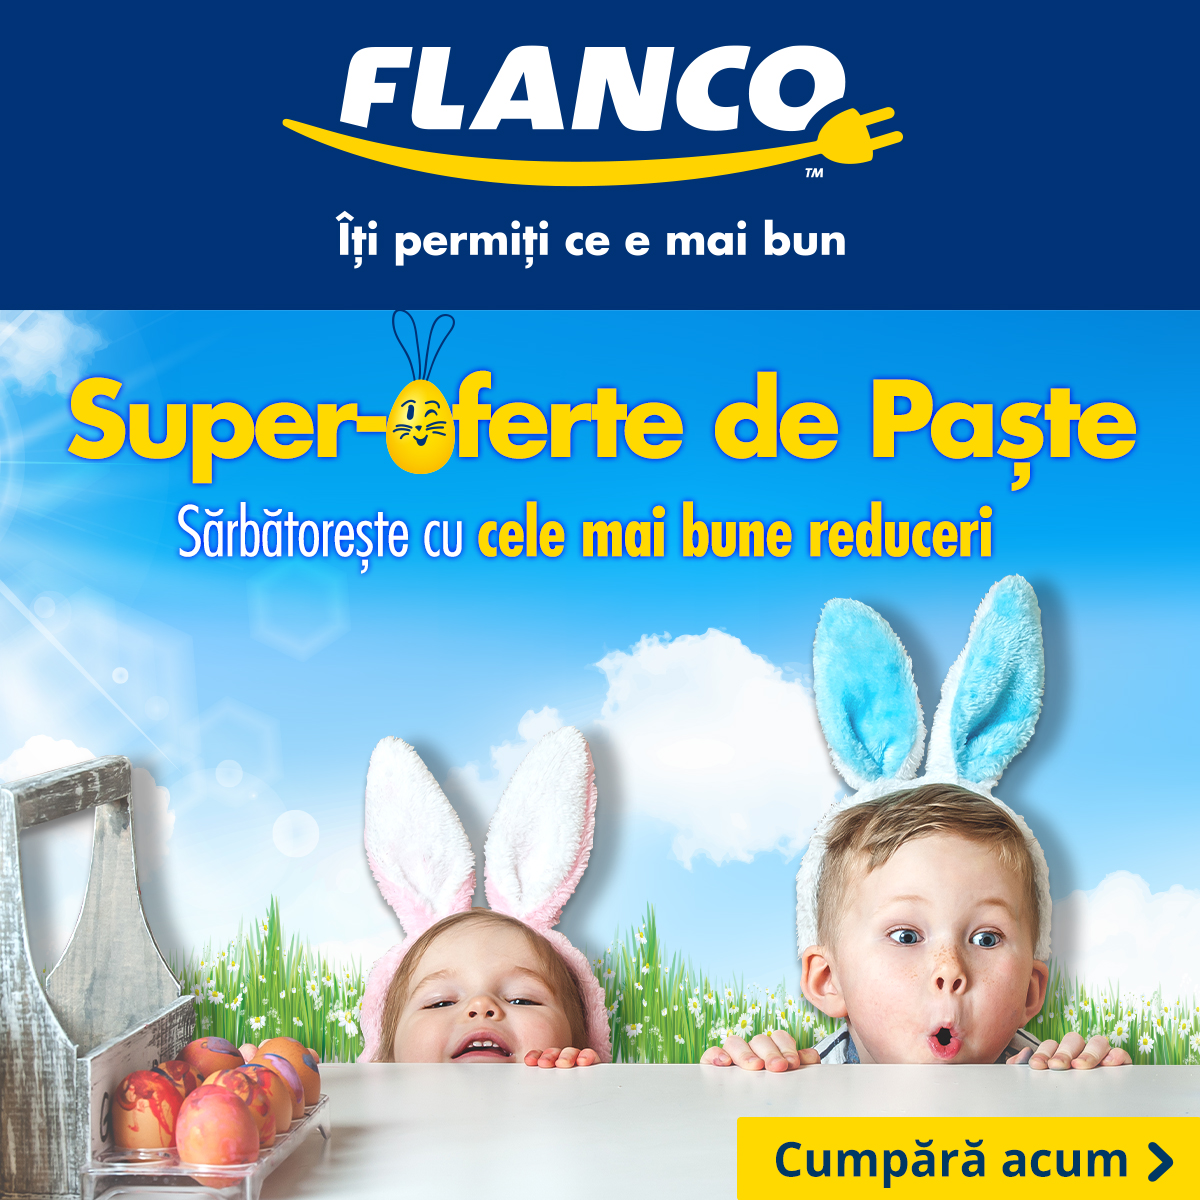 Flanco - Super oferte de Paște Sărbătorește cu cele mai bune reduceri